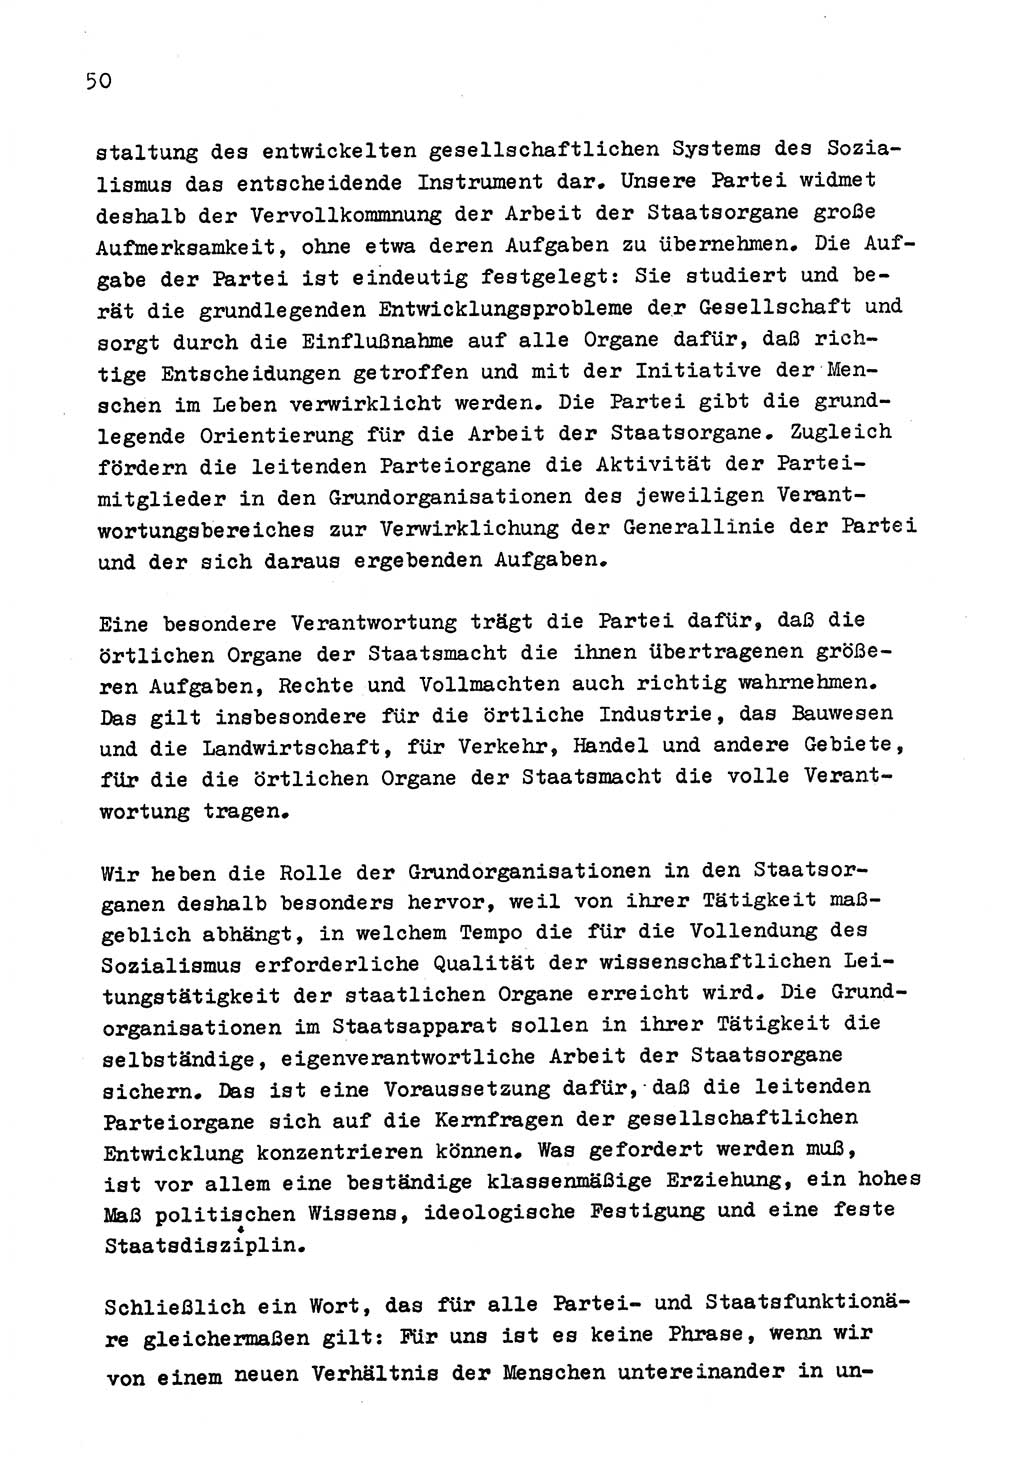 Zu Fragen der Parteiarbeit [Sozialistische Einheitspartei Deutschlands (SED) Deutsche Demokratische Republik (DDR)] 1979, Seite 50 (Fr. PA SED DDR 1979, S. 50)